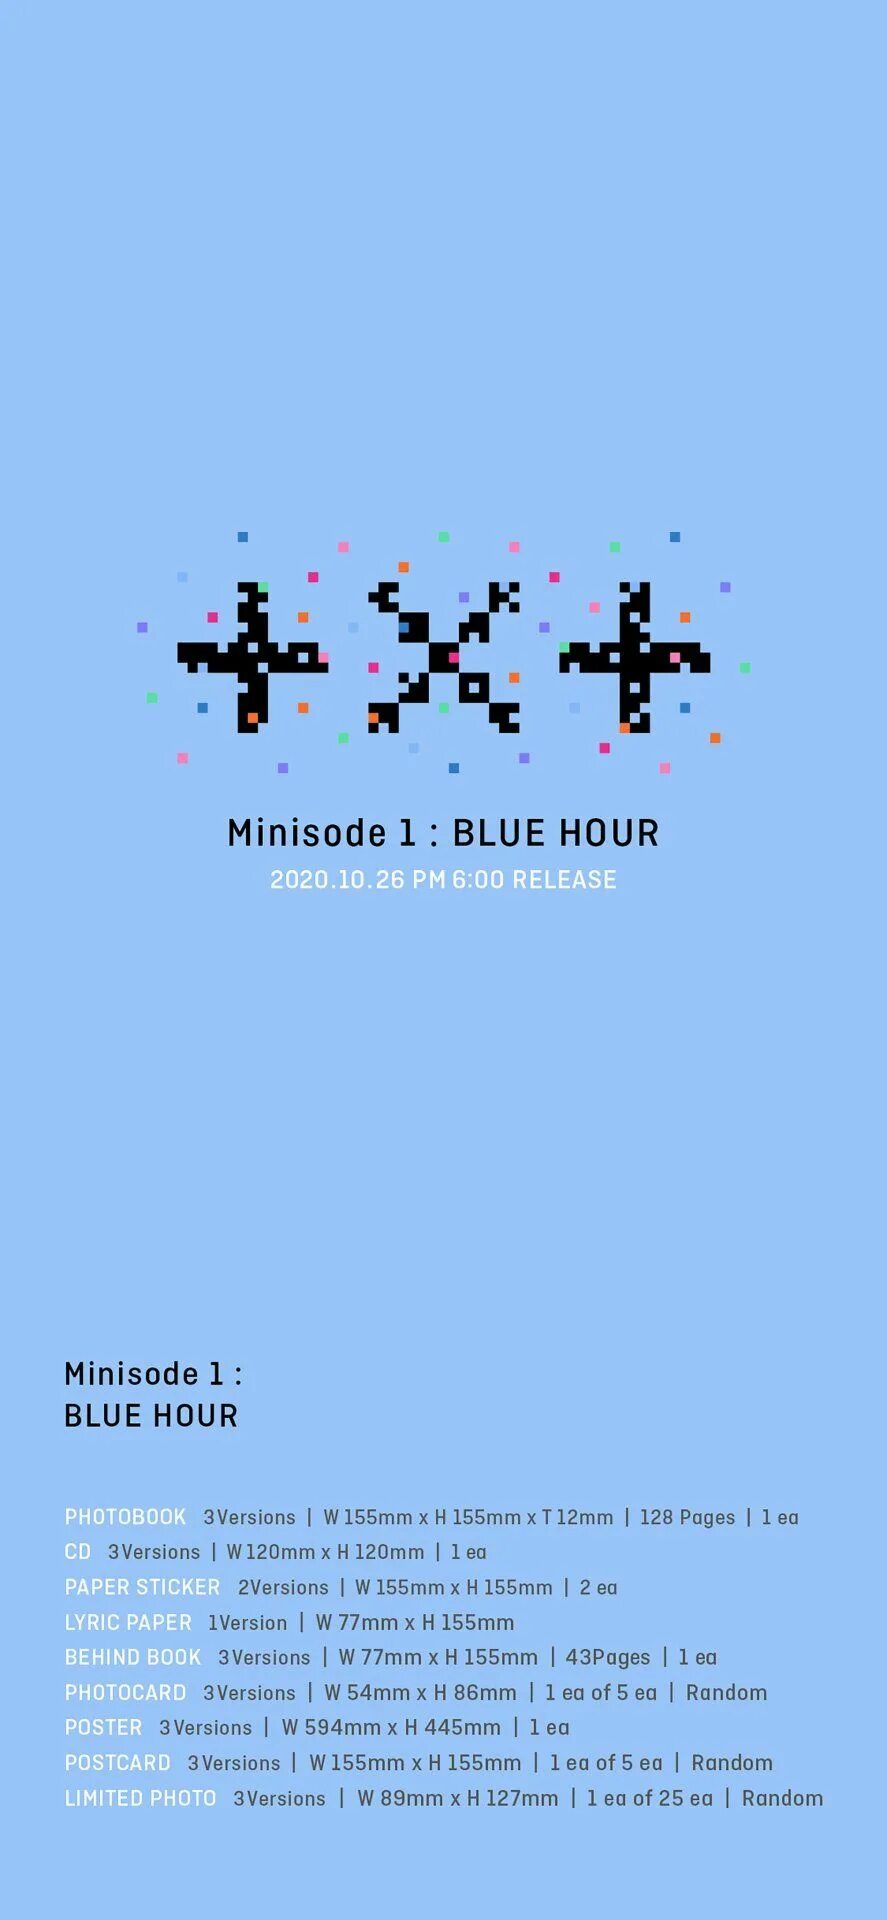 Альбом тхт Blue hour. Тхт Minisode Blue hour альбом. Тхт логотип. Blue hour txt обложка.